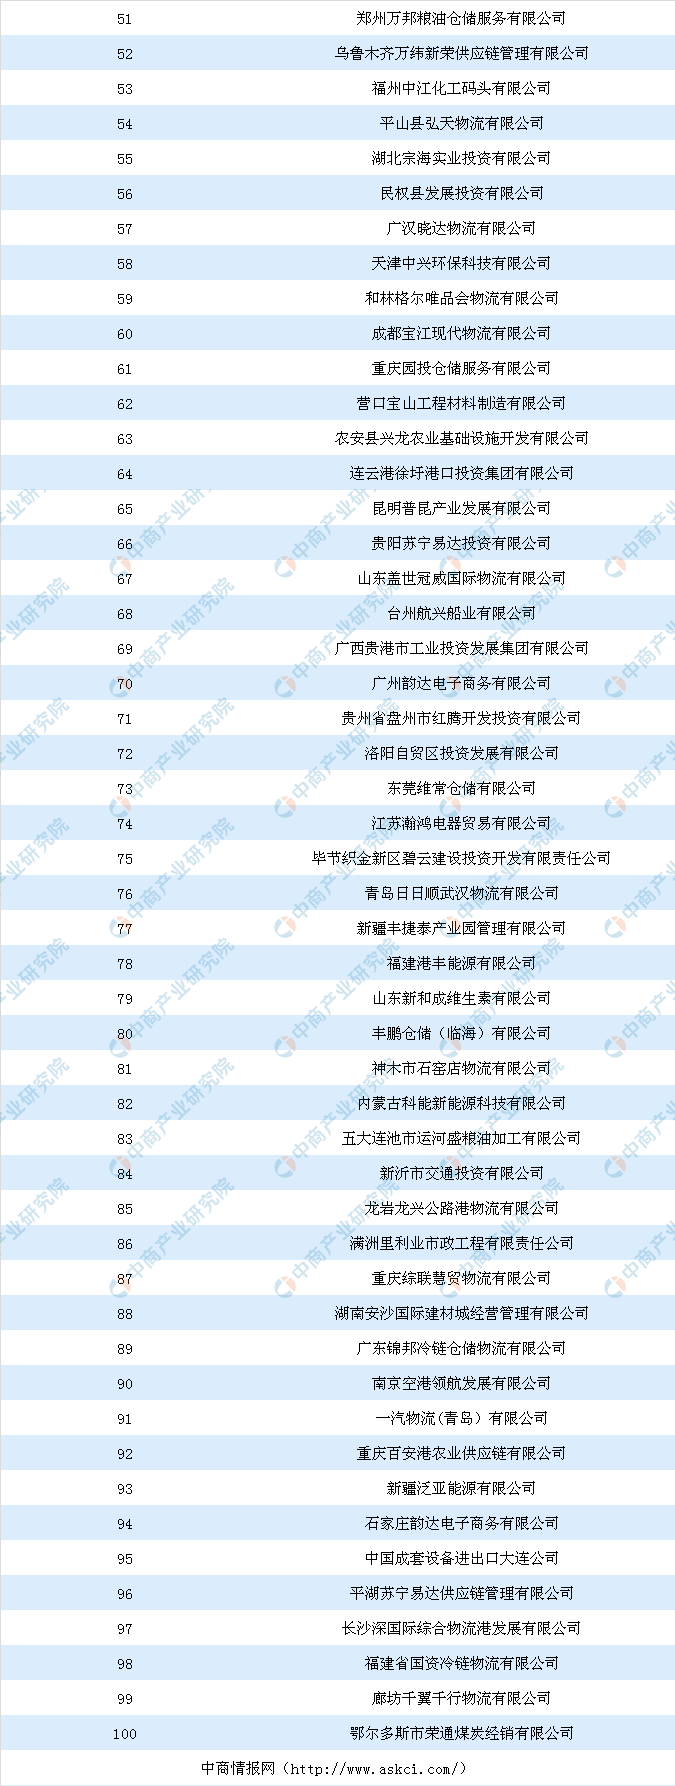 2019中国企业排行榜_2019年中国房地产企业新增货值TOP100排行榜